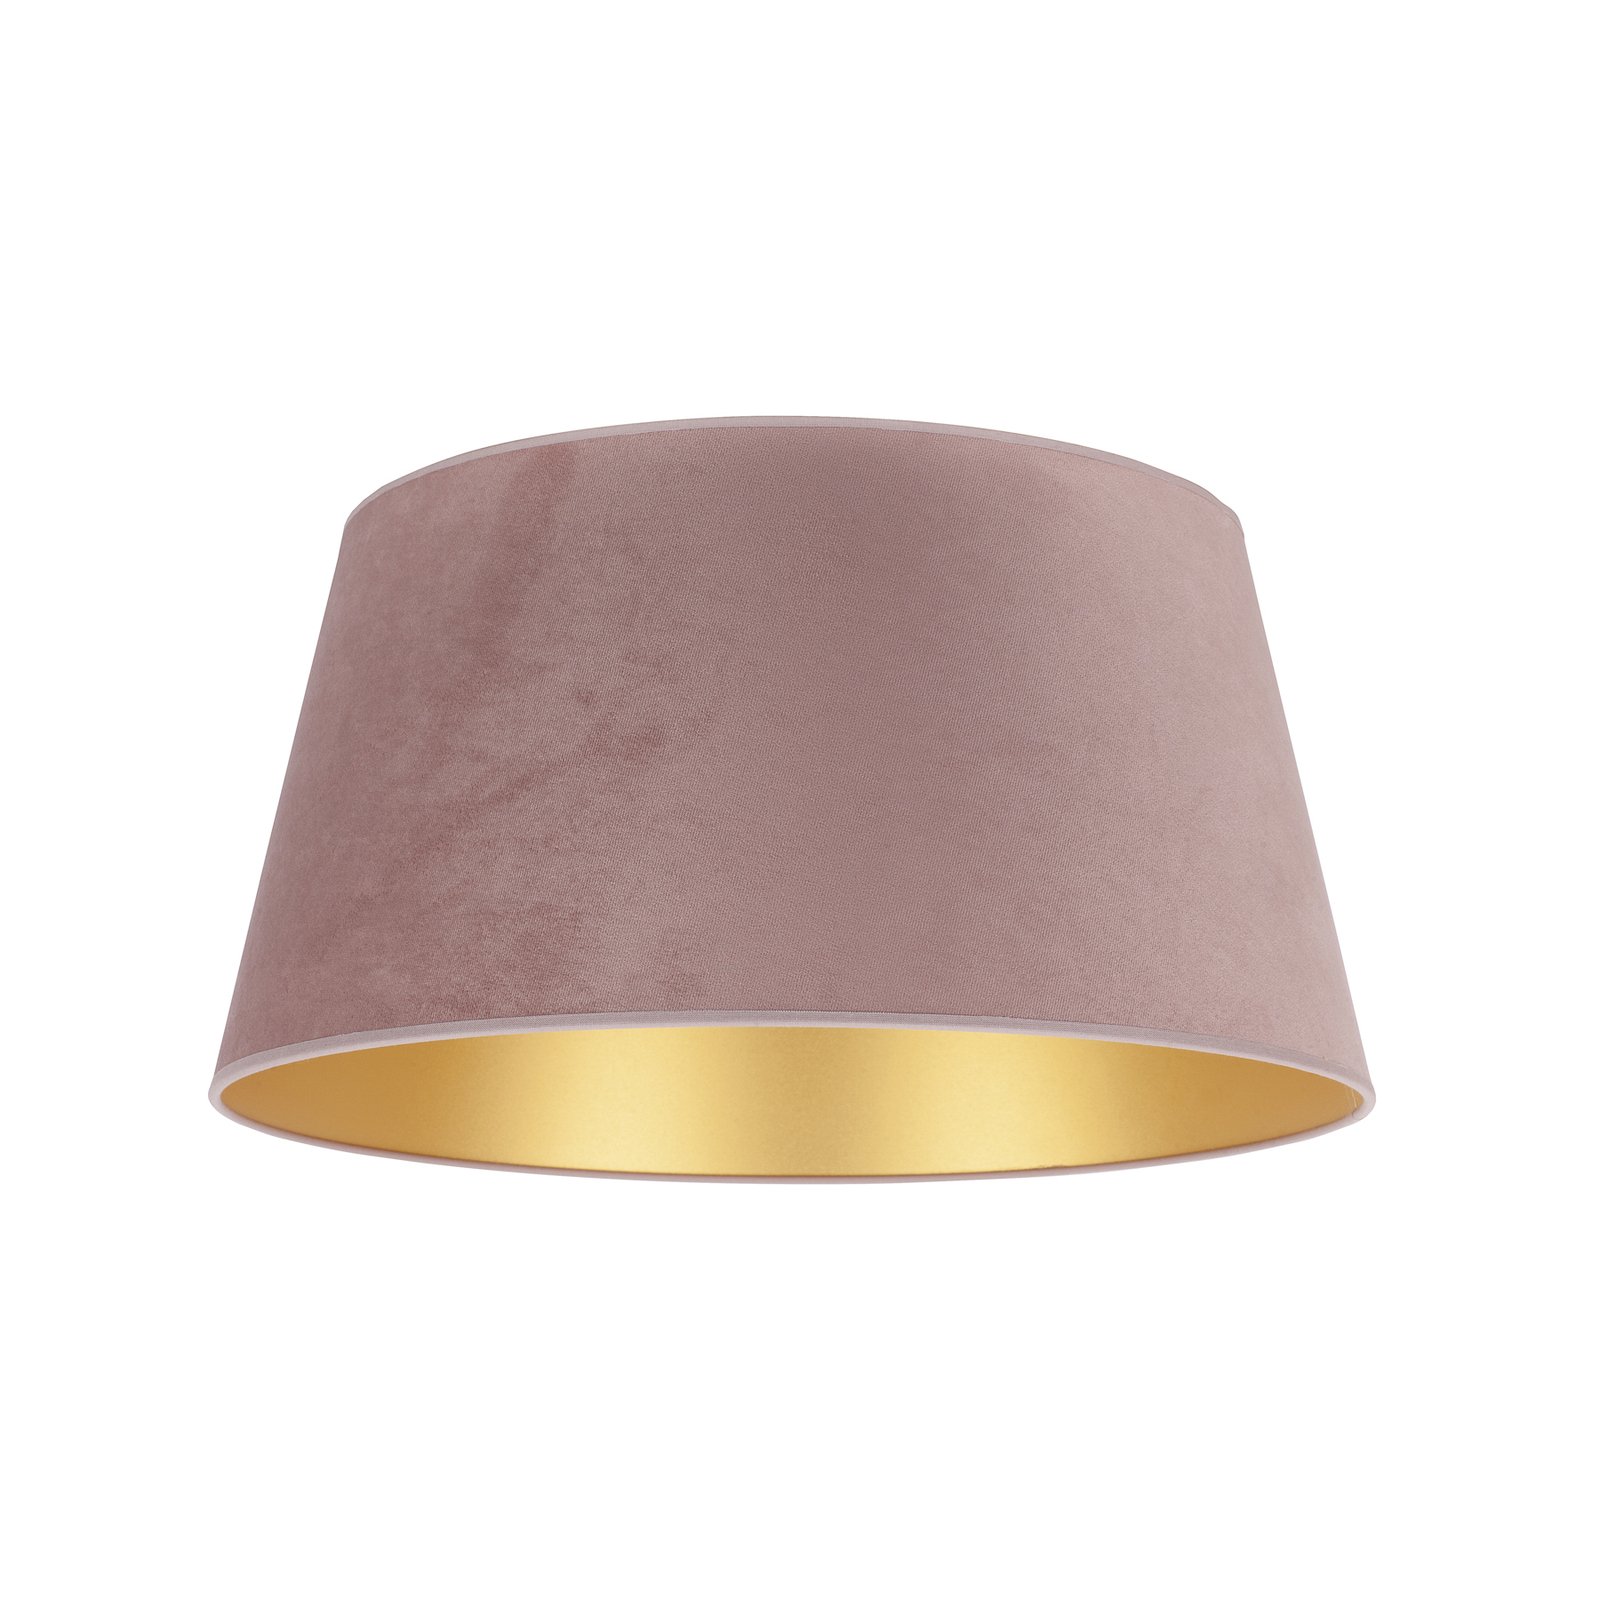 Keglelampeskærm højde 22,5 cm, pink/guld